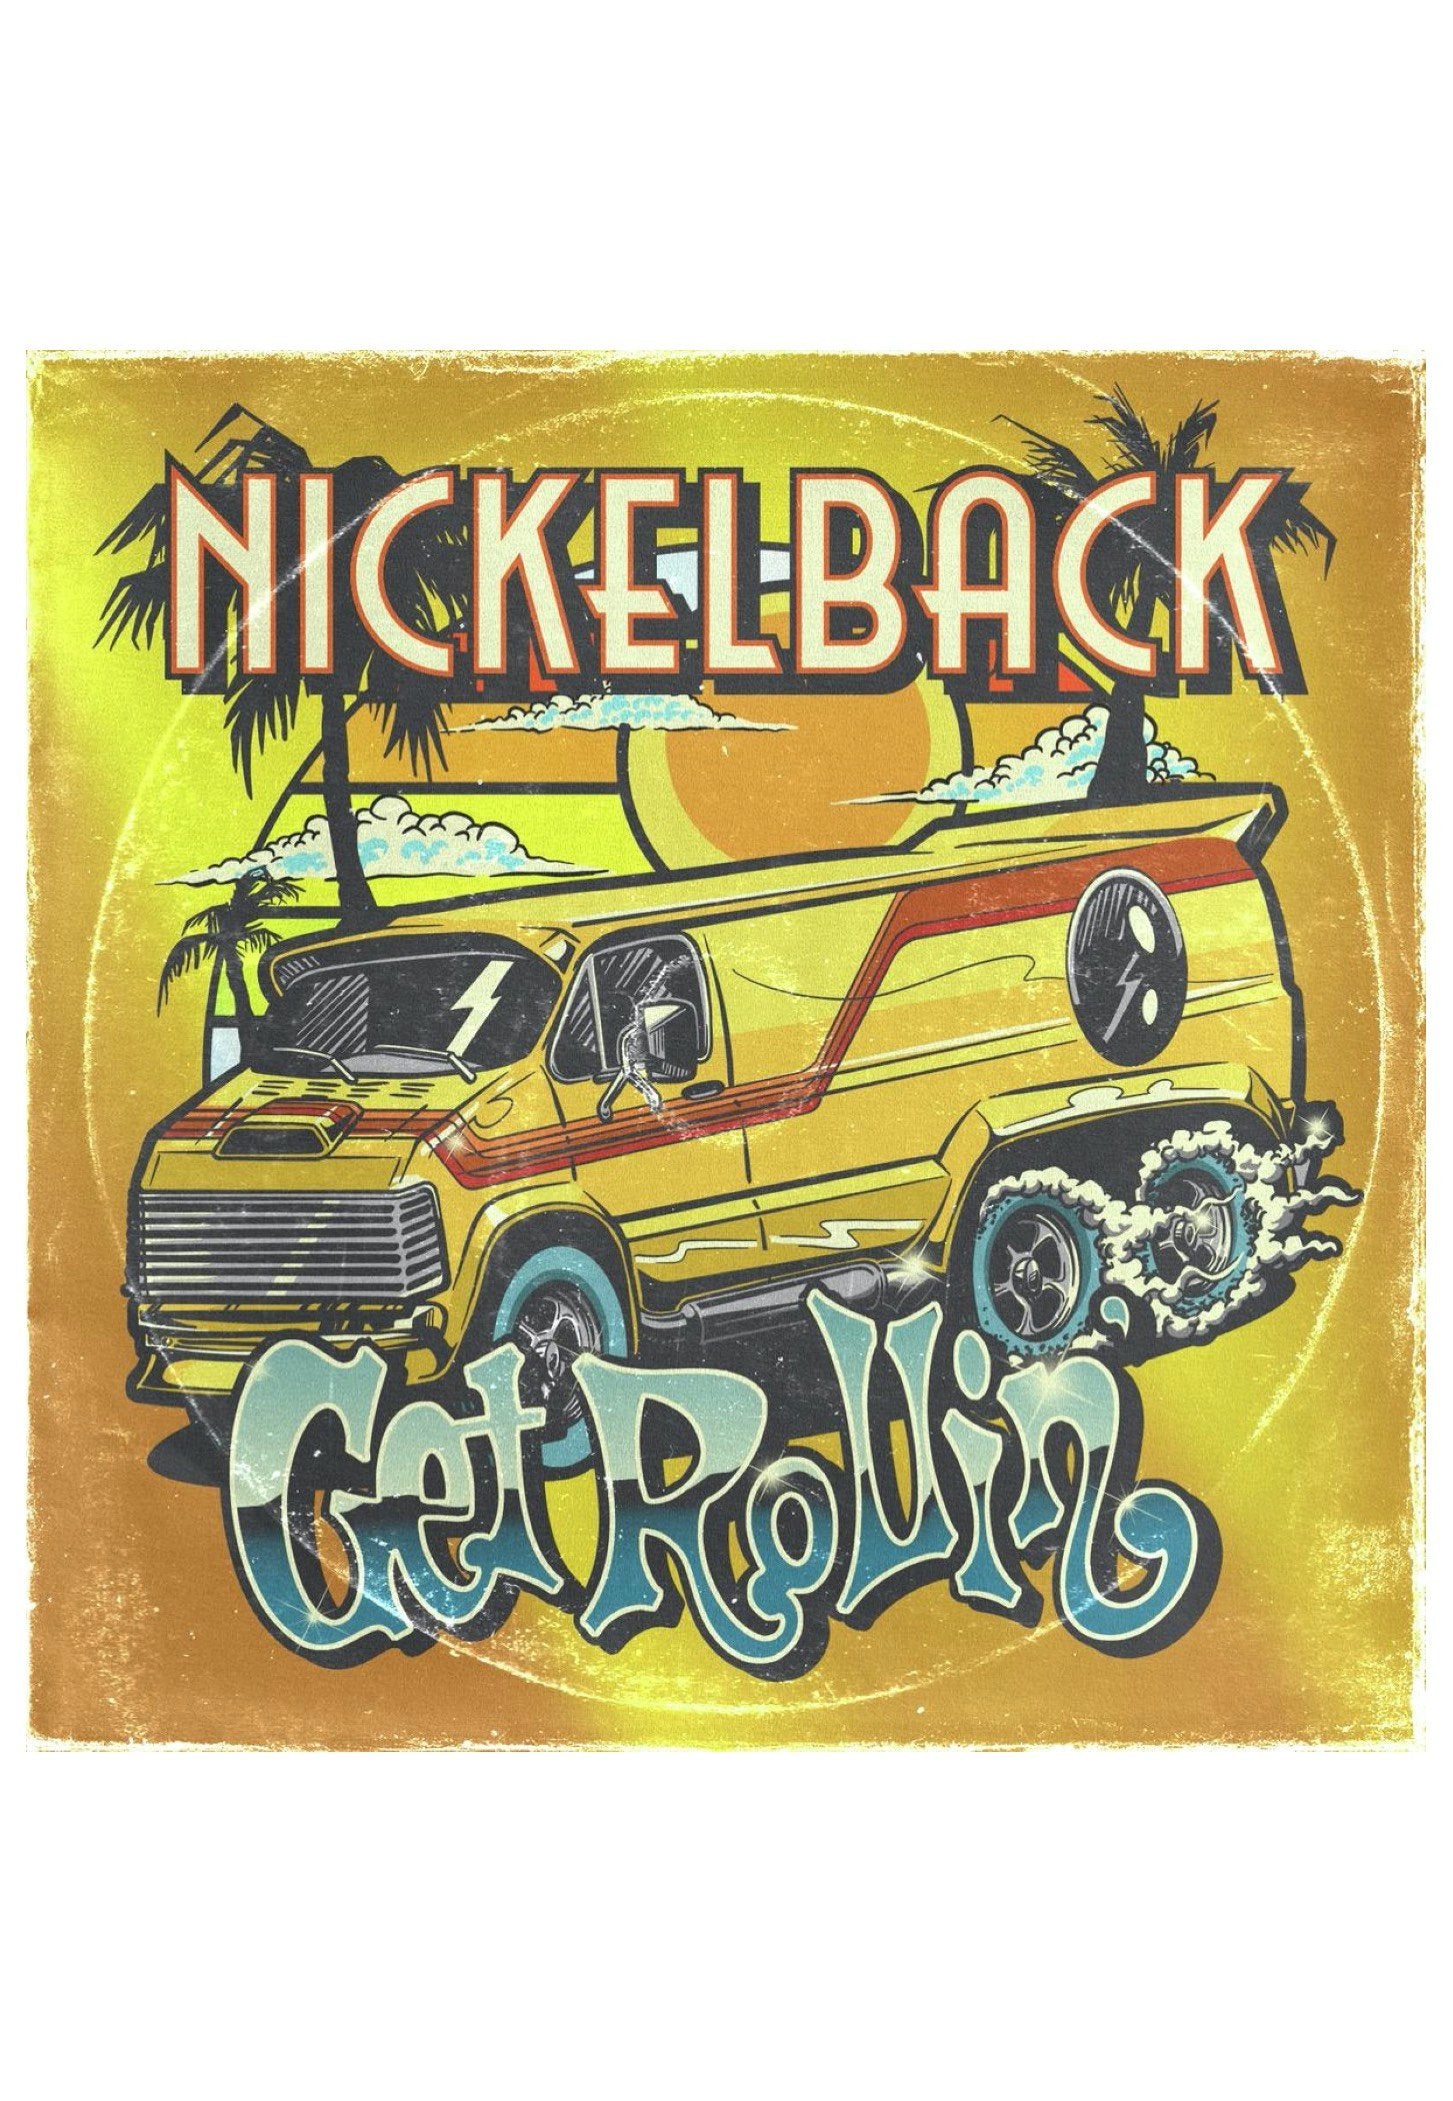 Nickelback - Get Rollin' (Deluxe) - Digipak CD